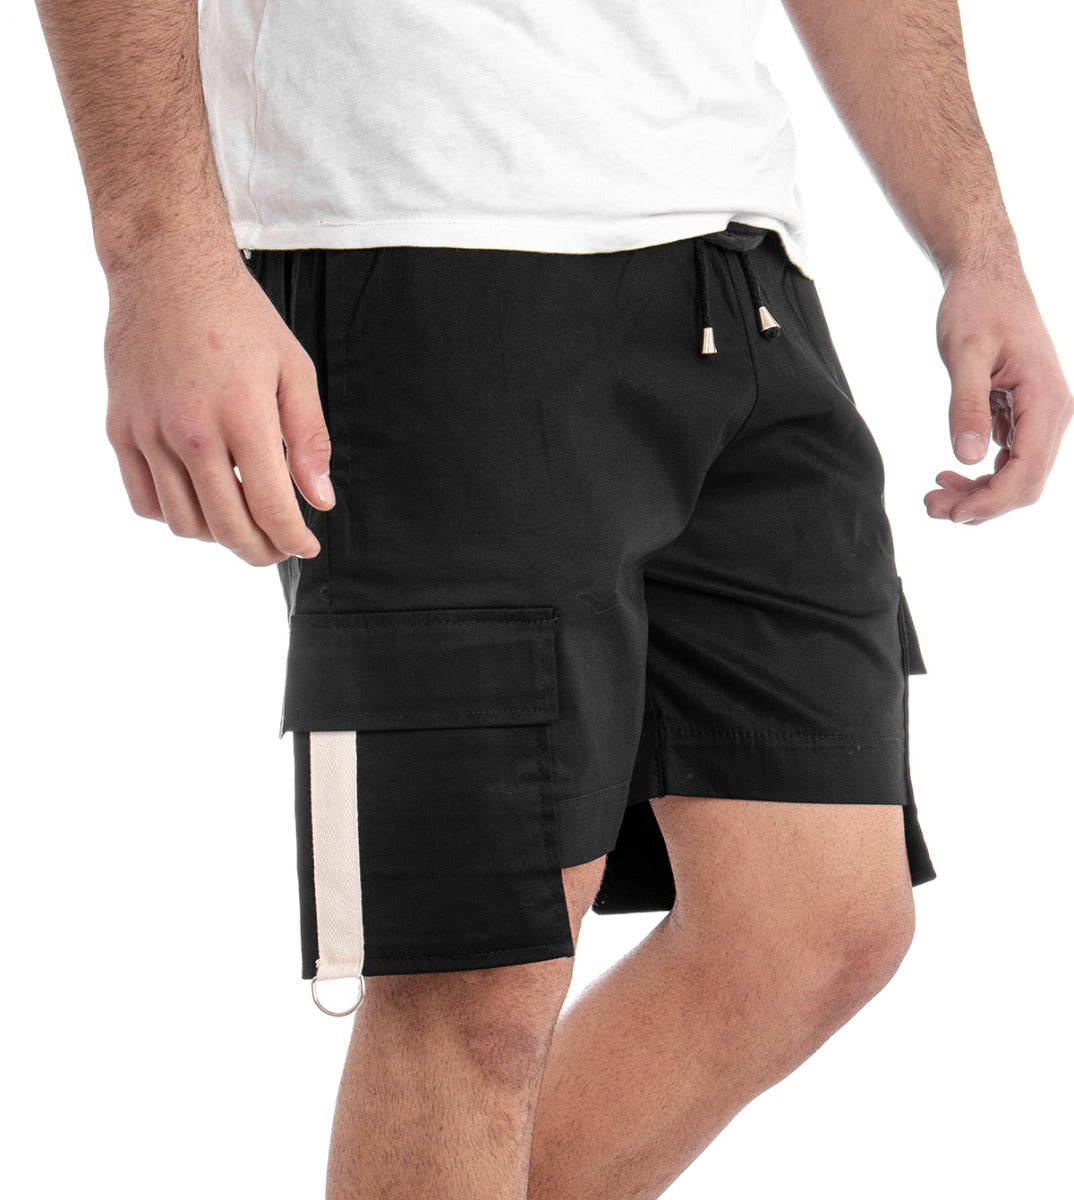 Bermuda Pantaloncino Uomo Corto Nero Elastico Pantalaccio Tasconi GIOSAL-PC1275A